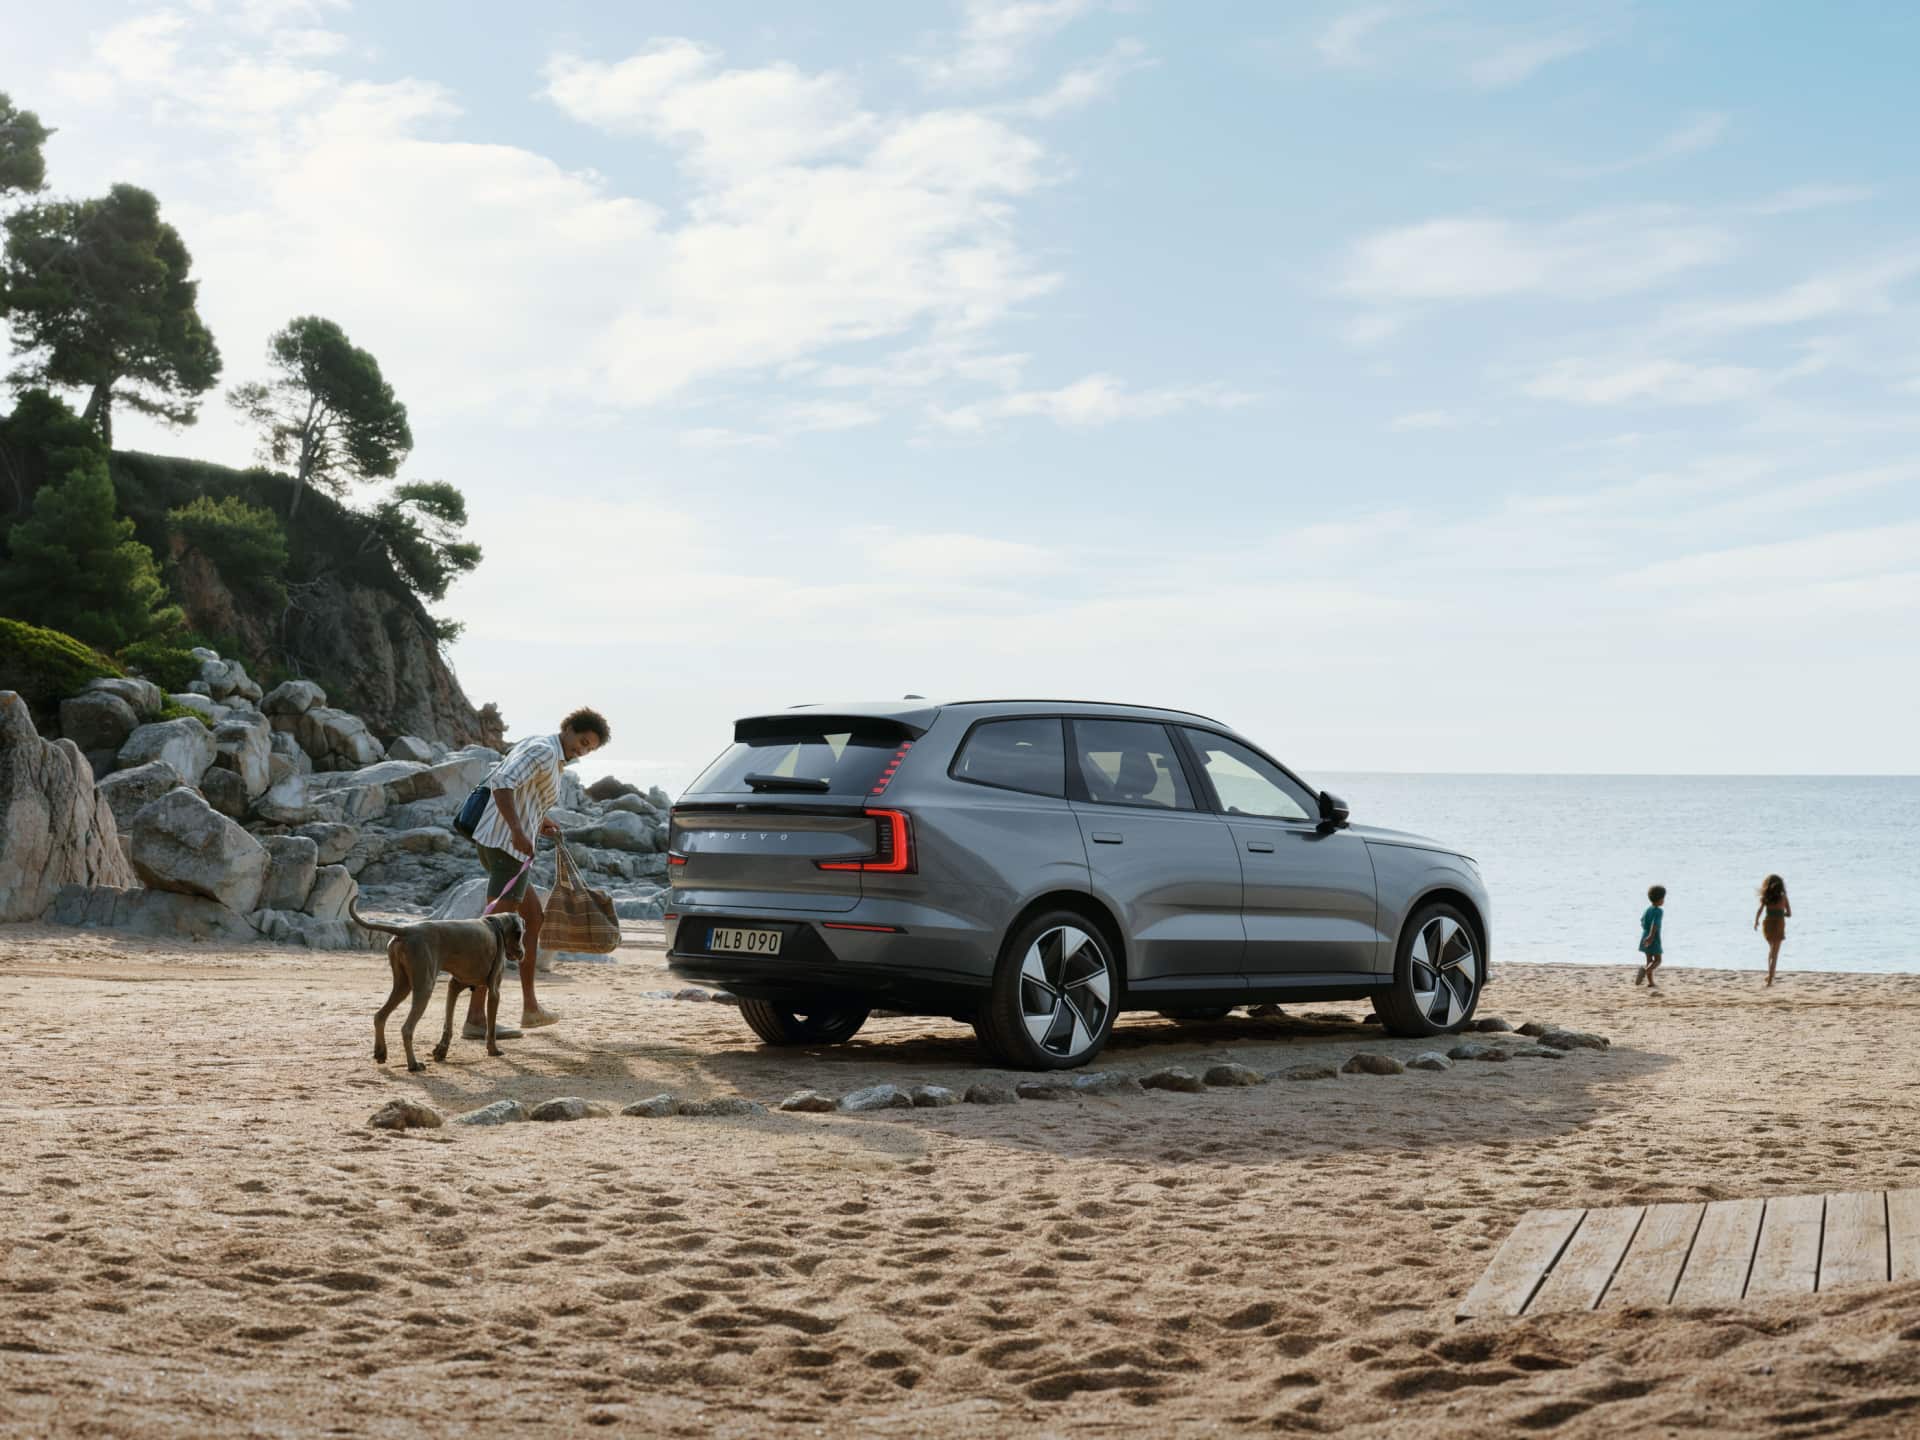 Uma imagem que mostra um homem e um cão a caminhar junto a um Volvo EX90 estacionado numa praia.